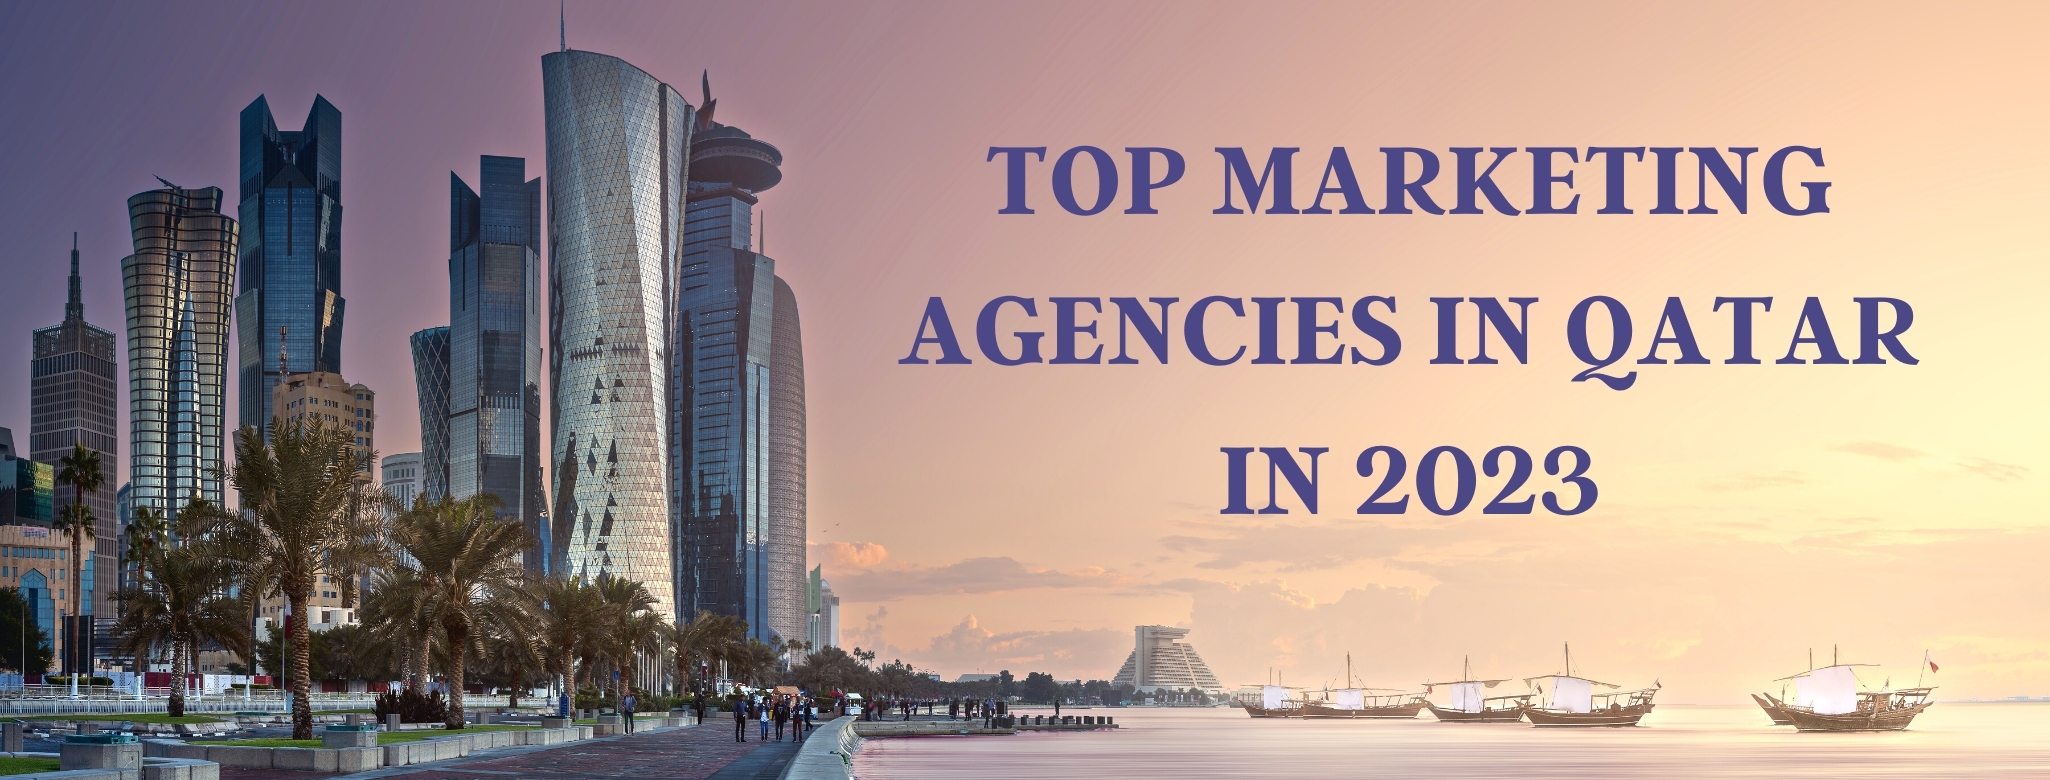 marketing agencies in Qatar